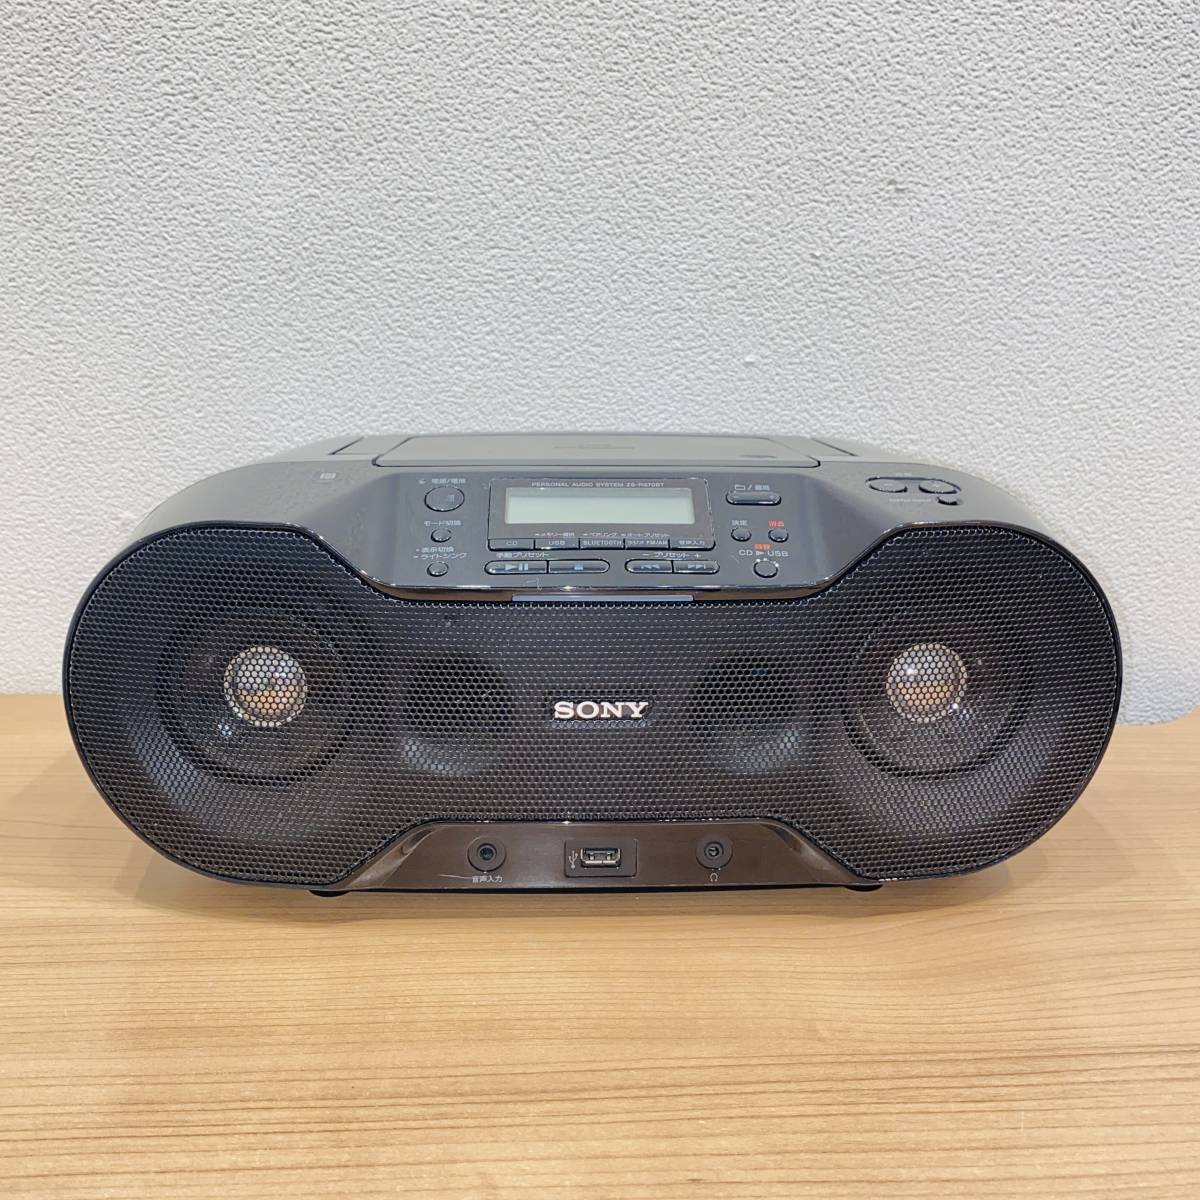 13068円 税込 送料無料 代引き手数料無料 ソニー CDラジオ Bluetooth対応 ZS-RS81BT